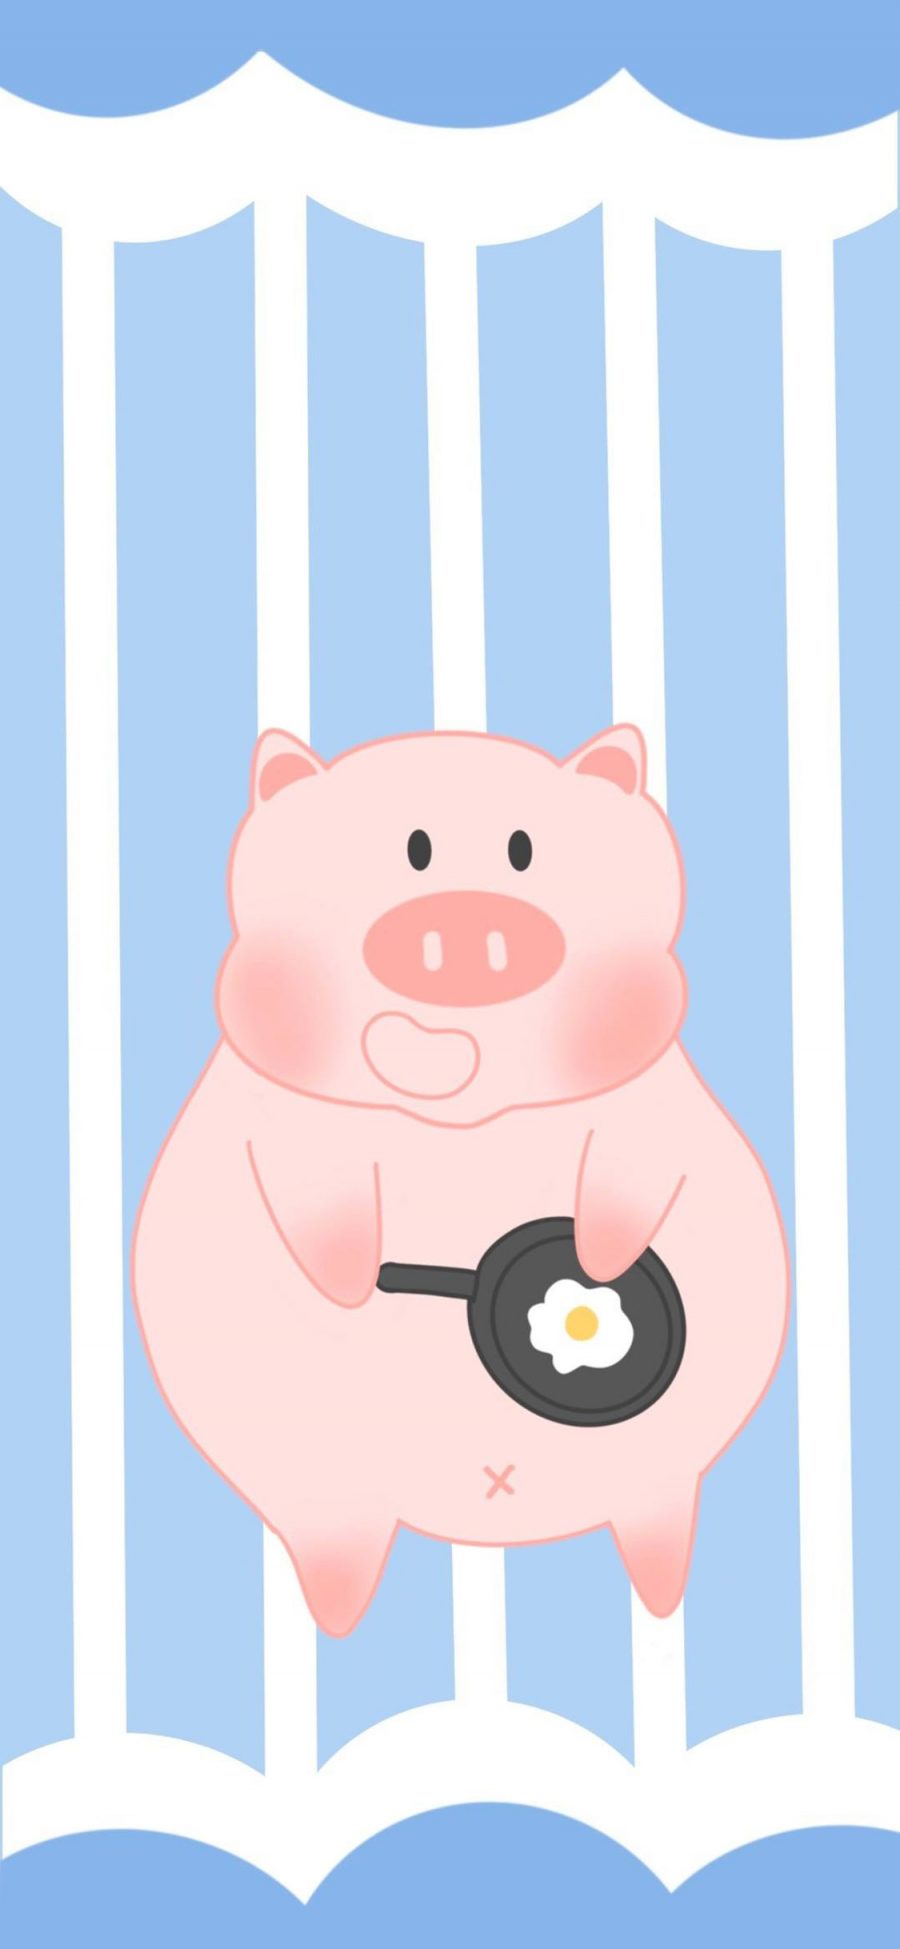 [2436×1125]蓝色 条纹 卡通 猪猪 煎蛋 苹果手机动漫壁纸图片